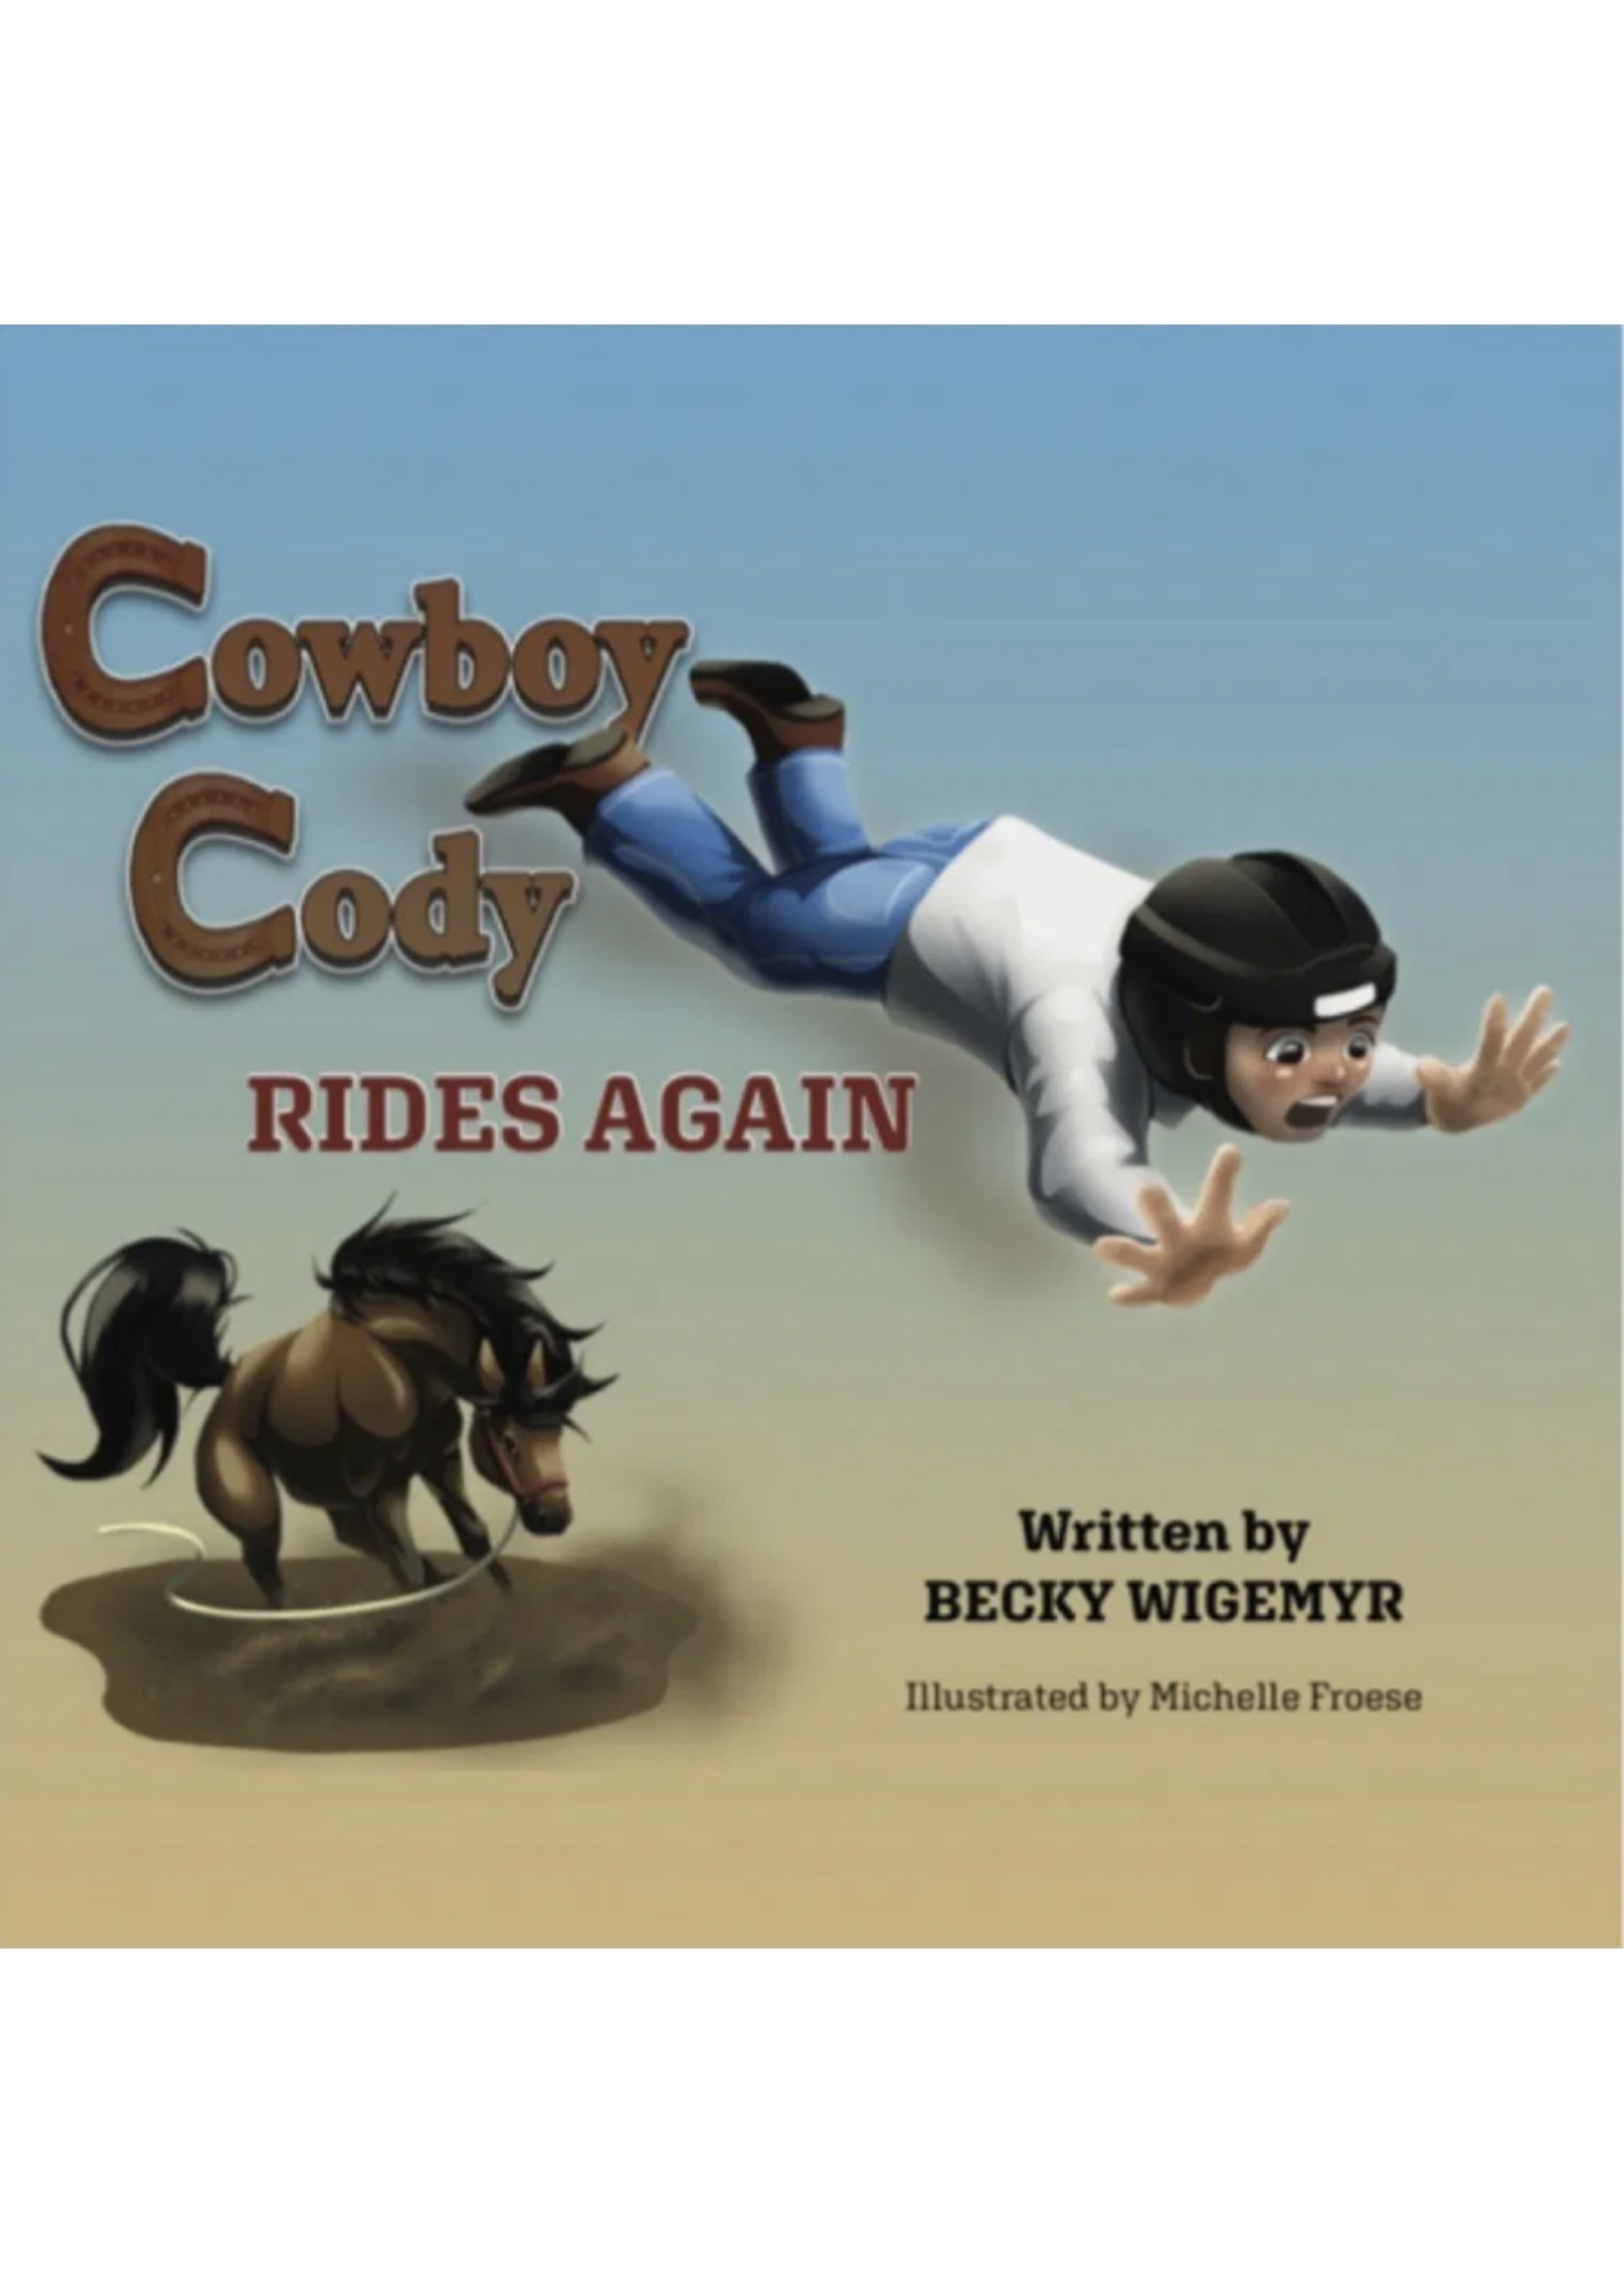 COWBOY CODY RIDES AGAIN BOOK